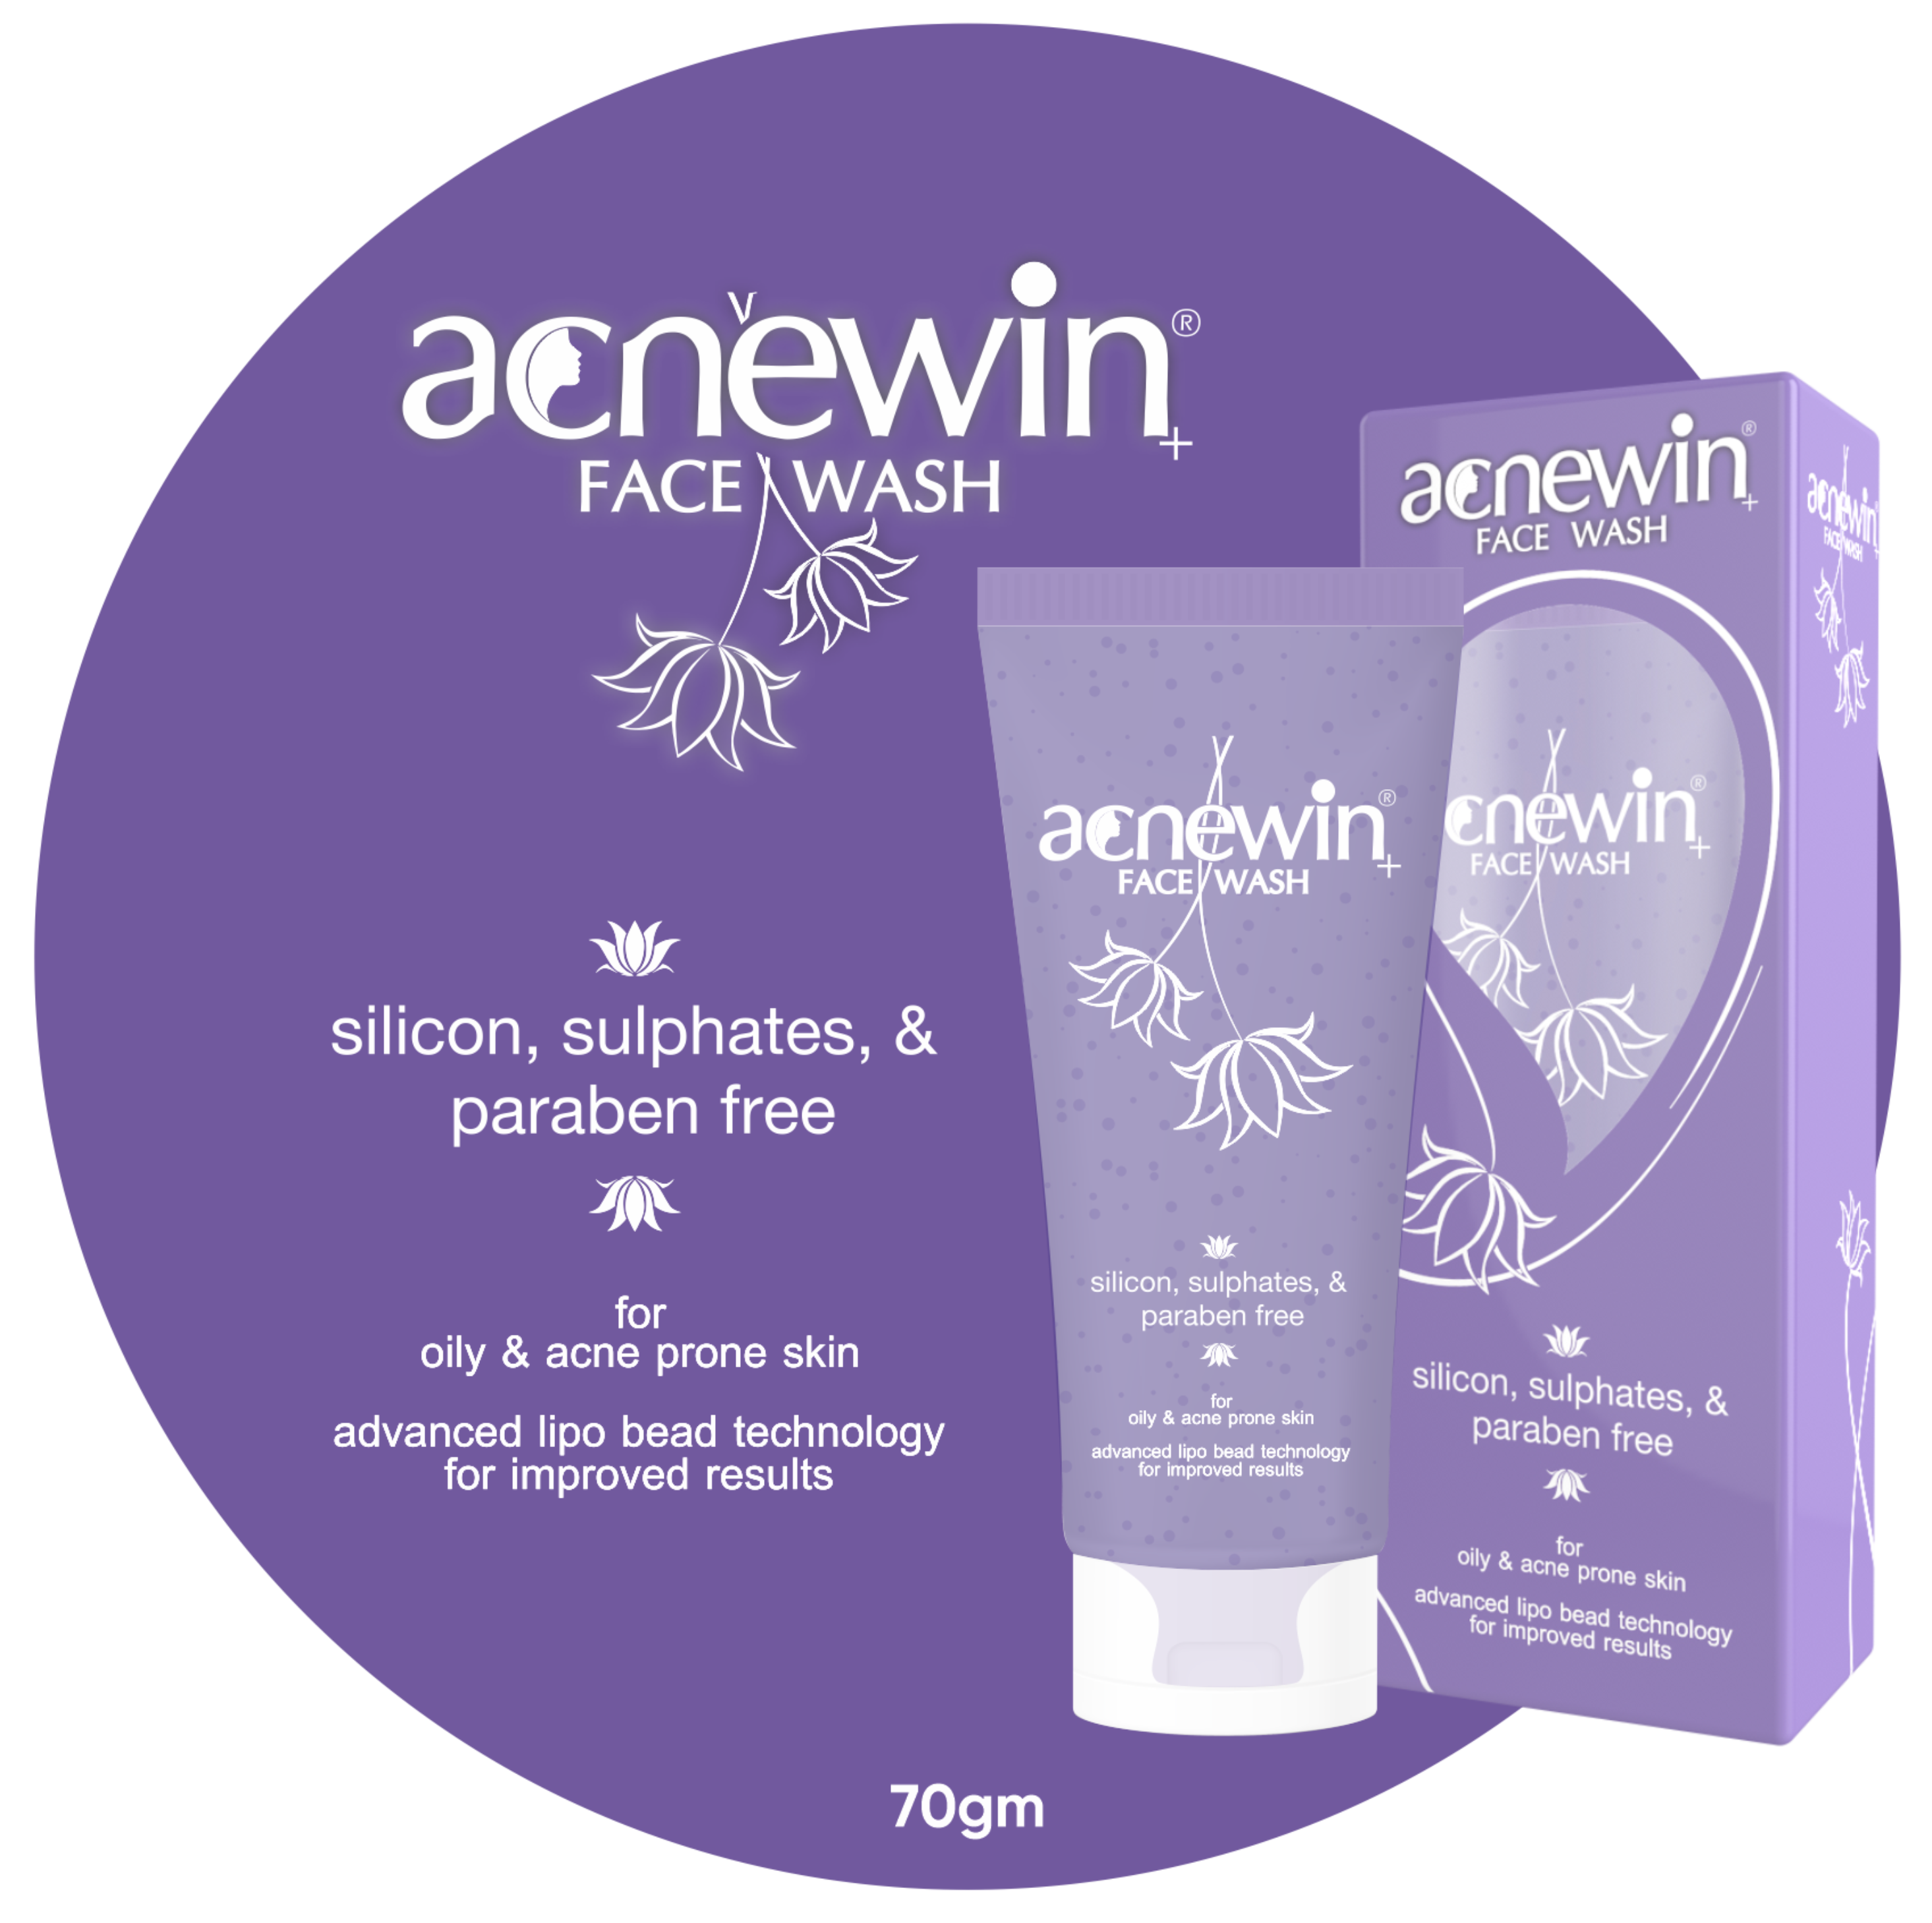 Acnewin Face Wash